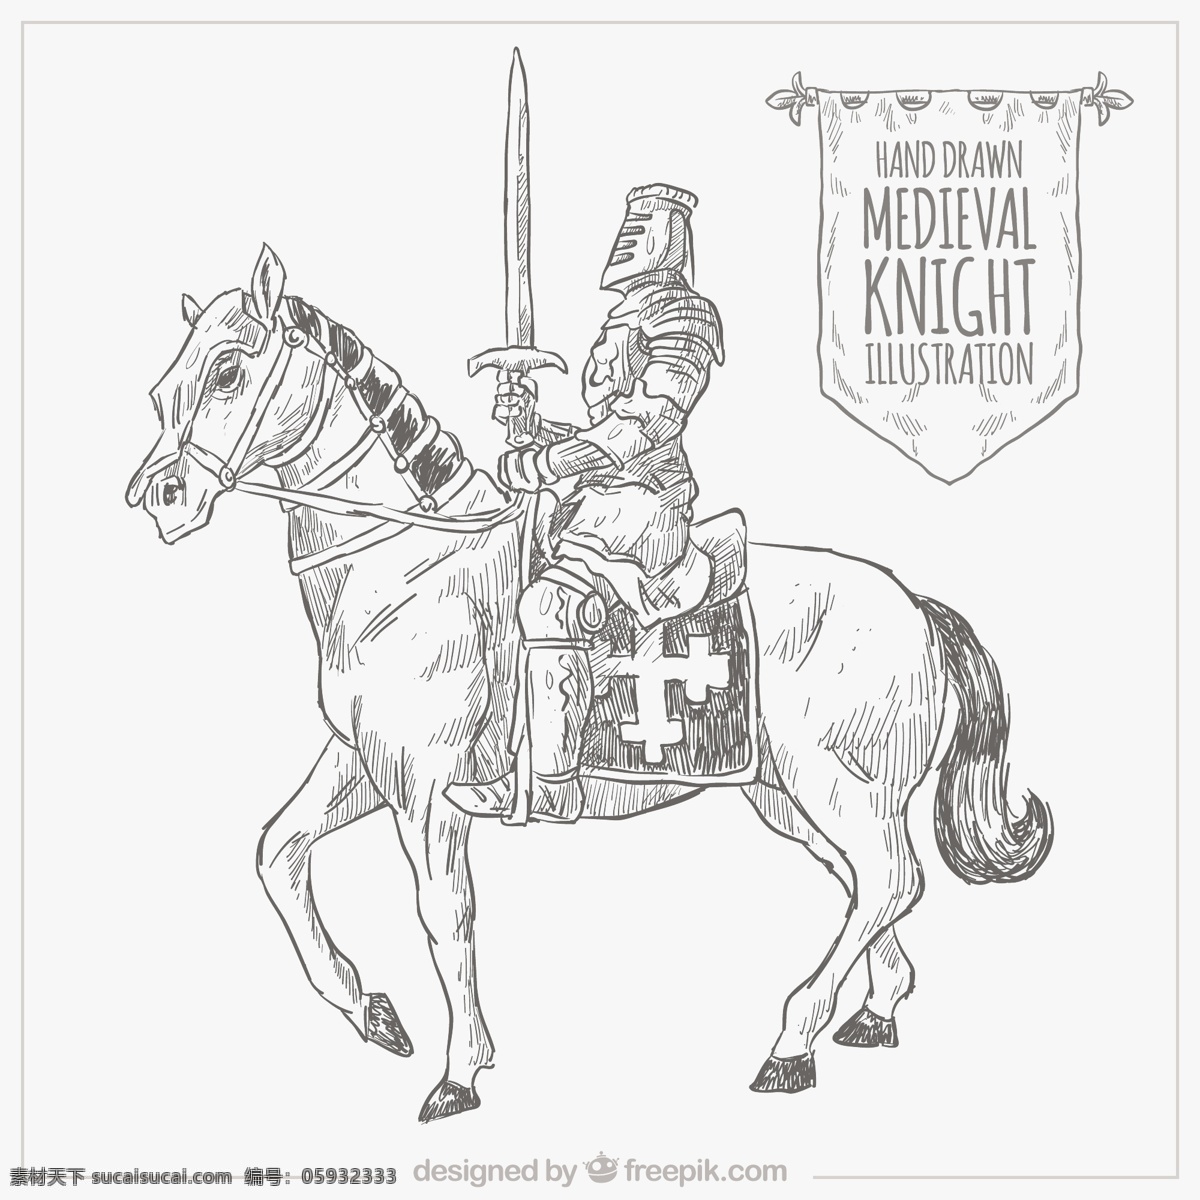 手绘骑士 手 动物 拉 马 绘画 插图 骑士 中世纪 框架 抽纱 素描 手绘 白色